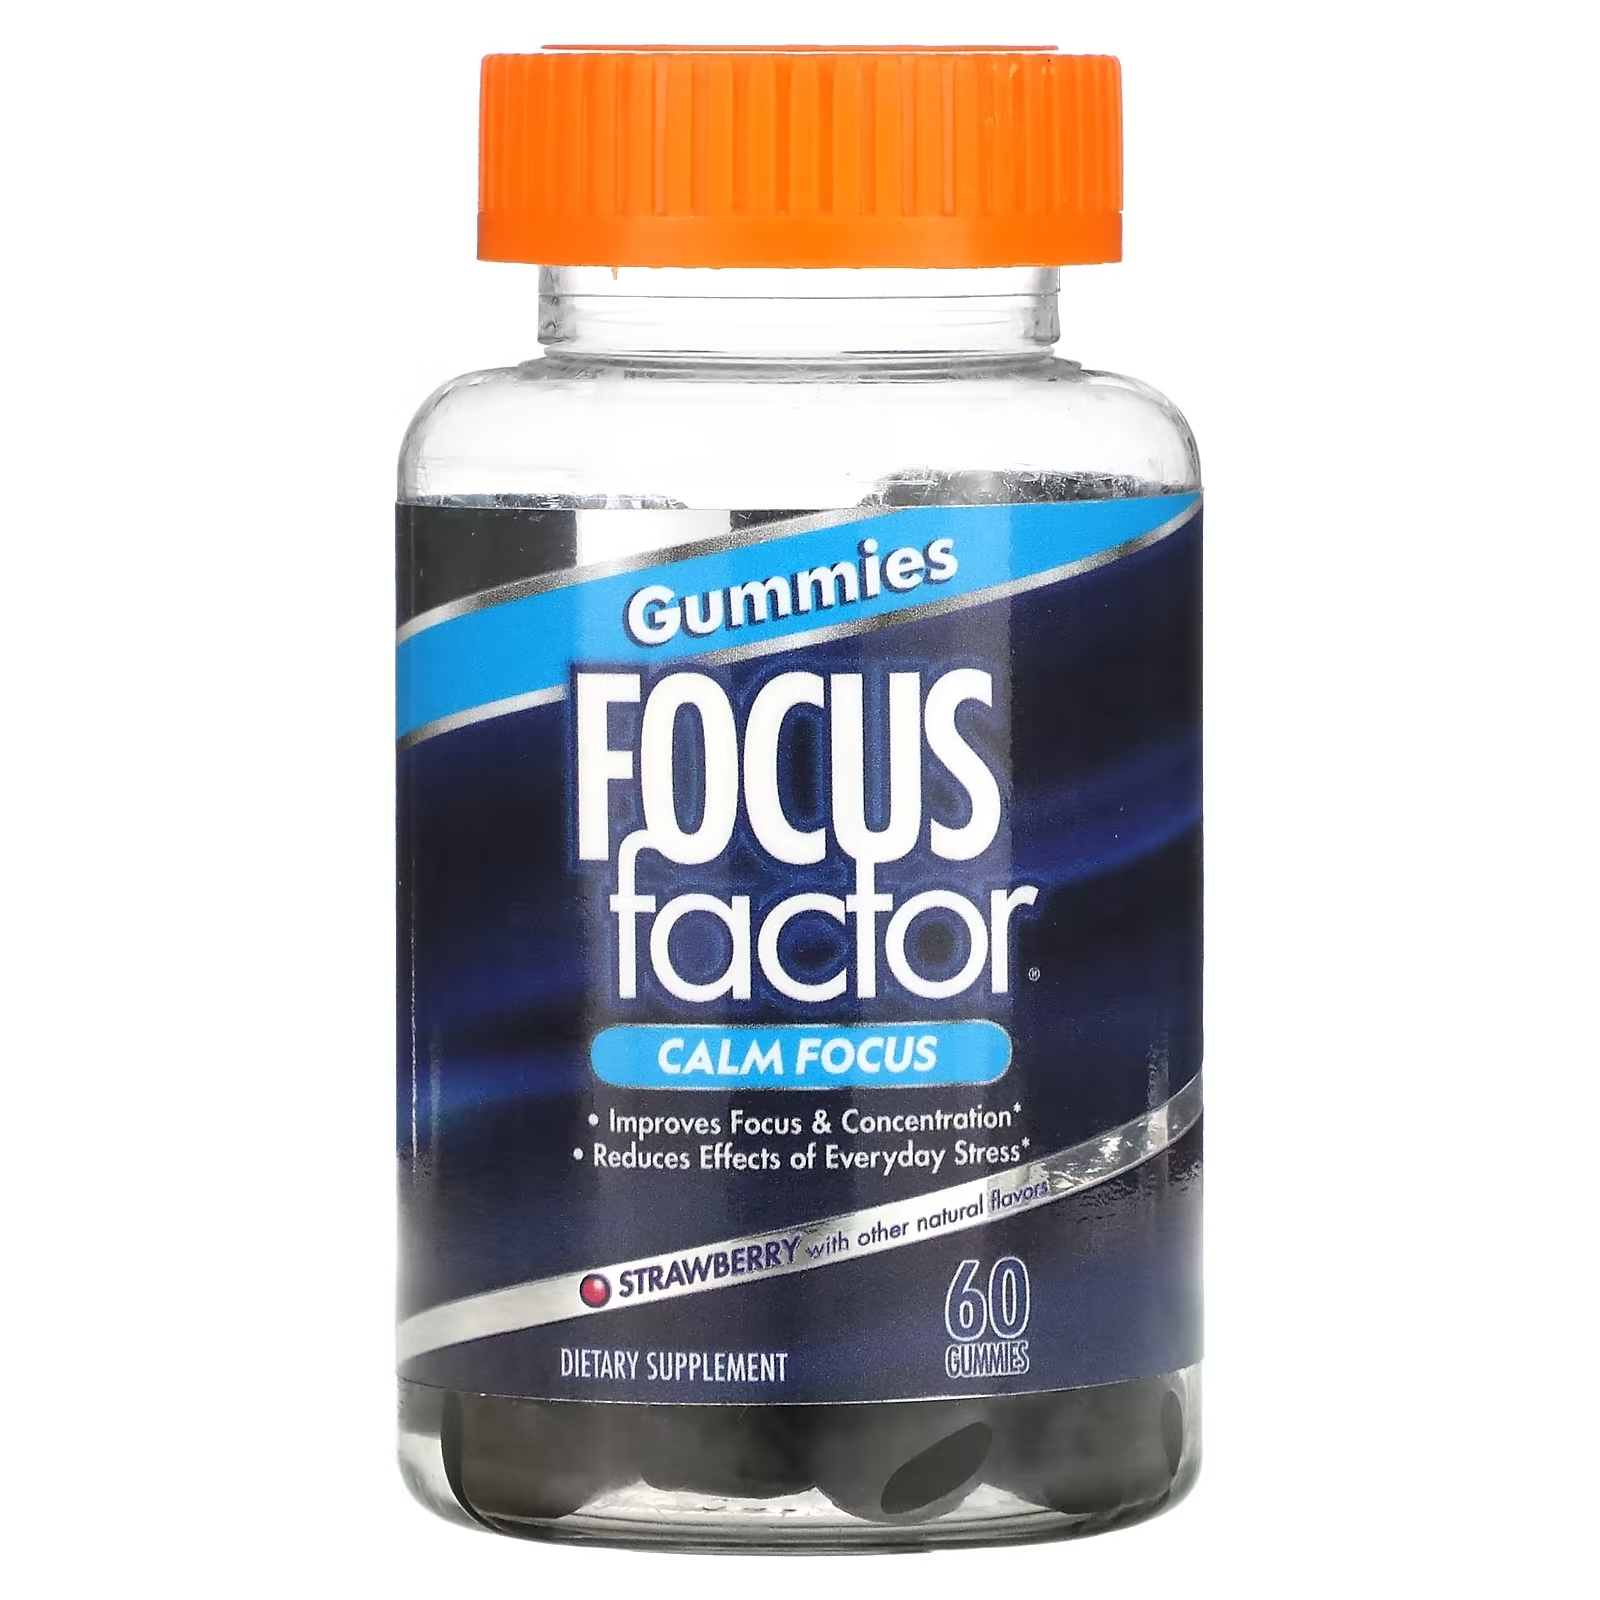 Focus Factor Calm Focus клубника, 60 жевательных таблеток focus factor brain